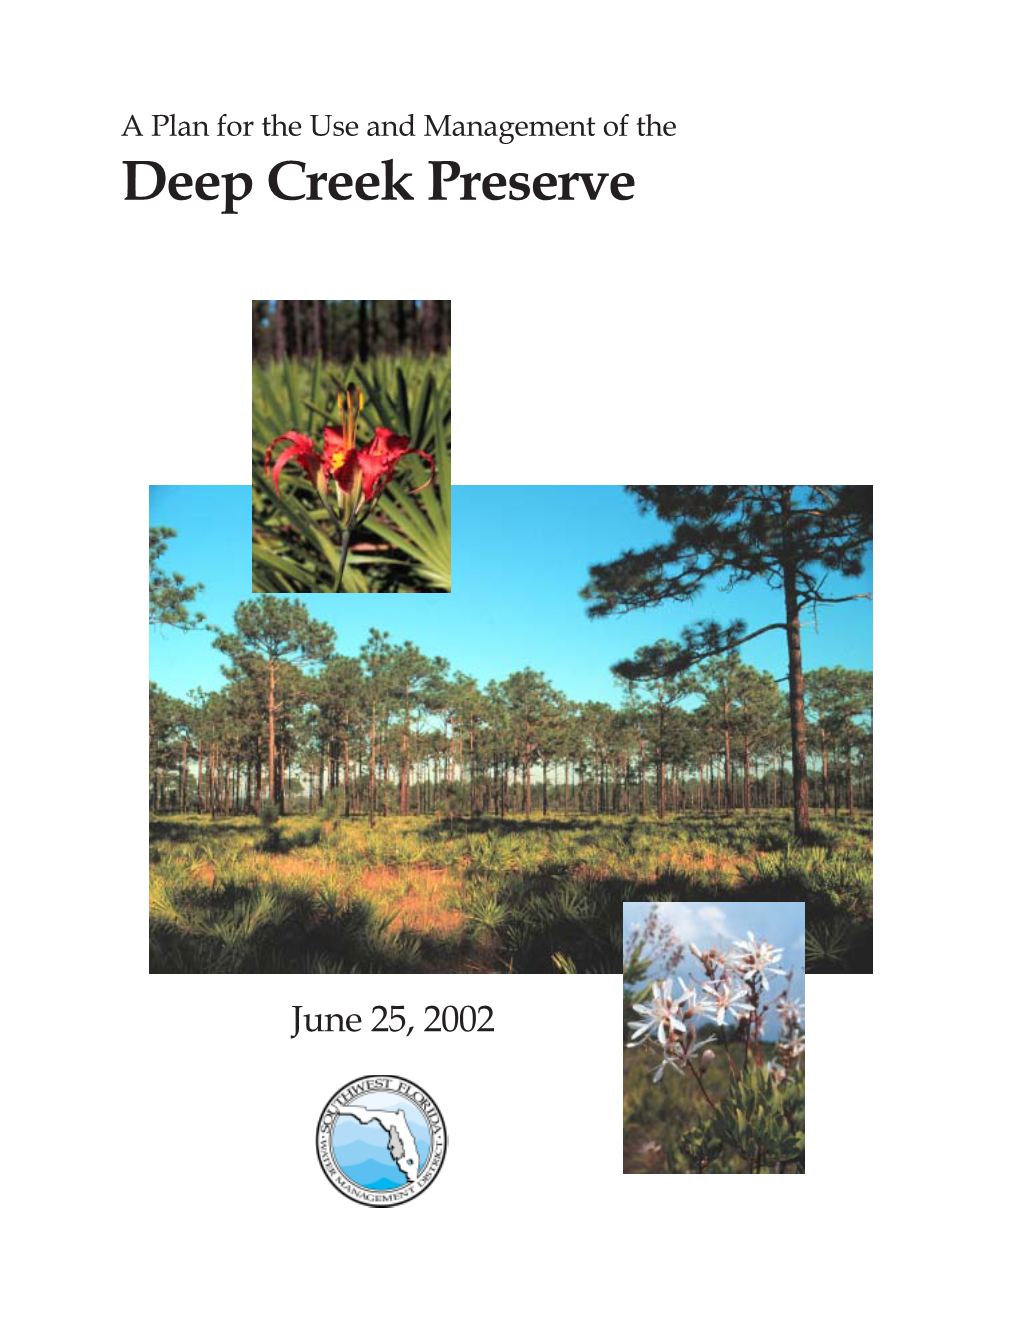 Deep Creek Preserve